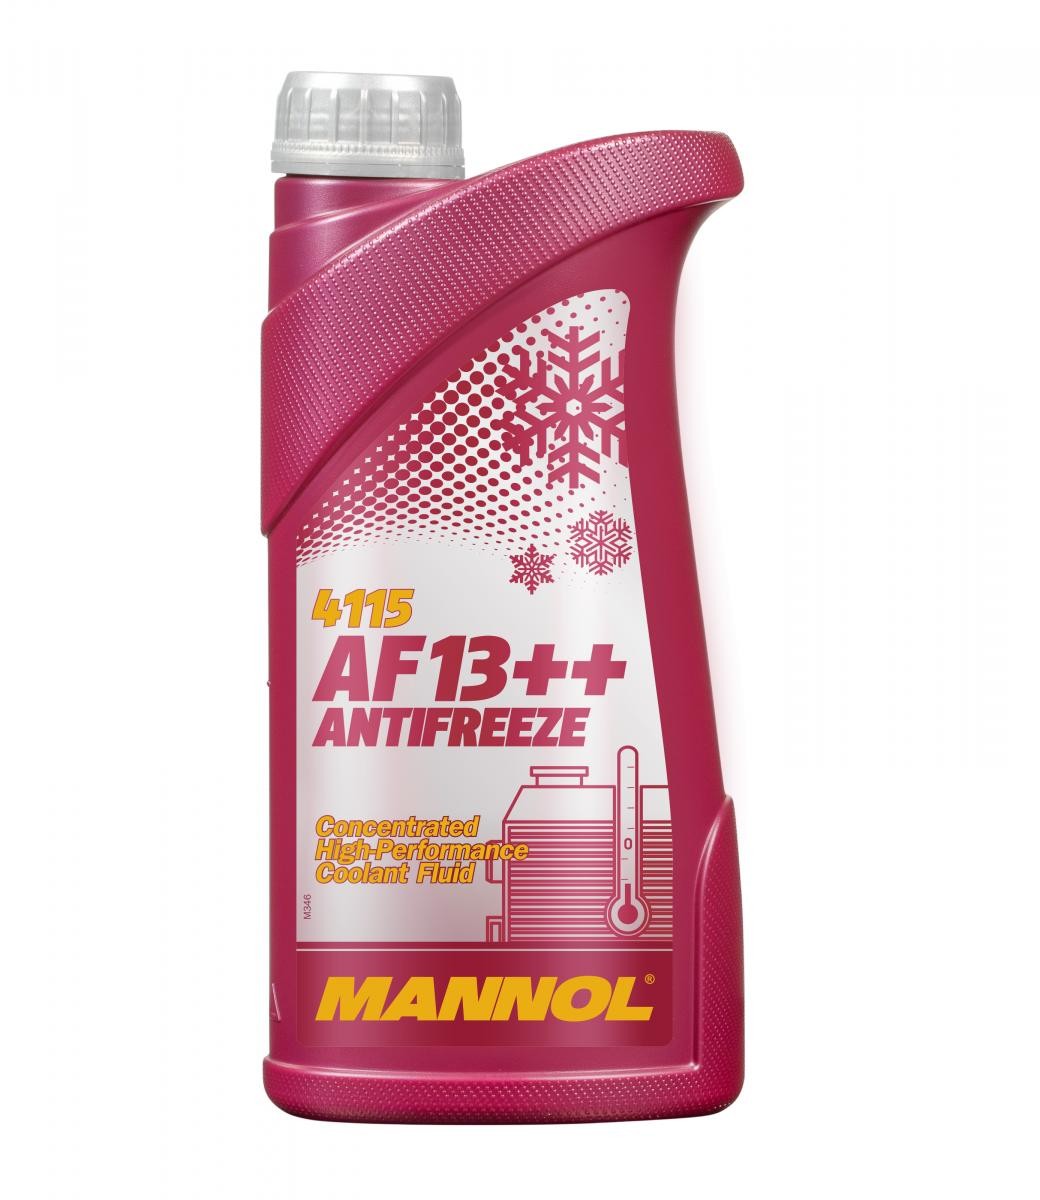 APRILIA ETV Kühlmittel G12 Rot, 1l, -38(50/50) MANNOL AF13++, High-performance MN4115-1